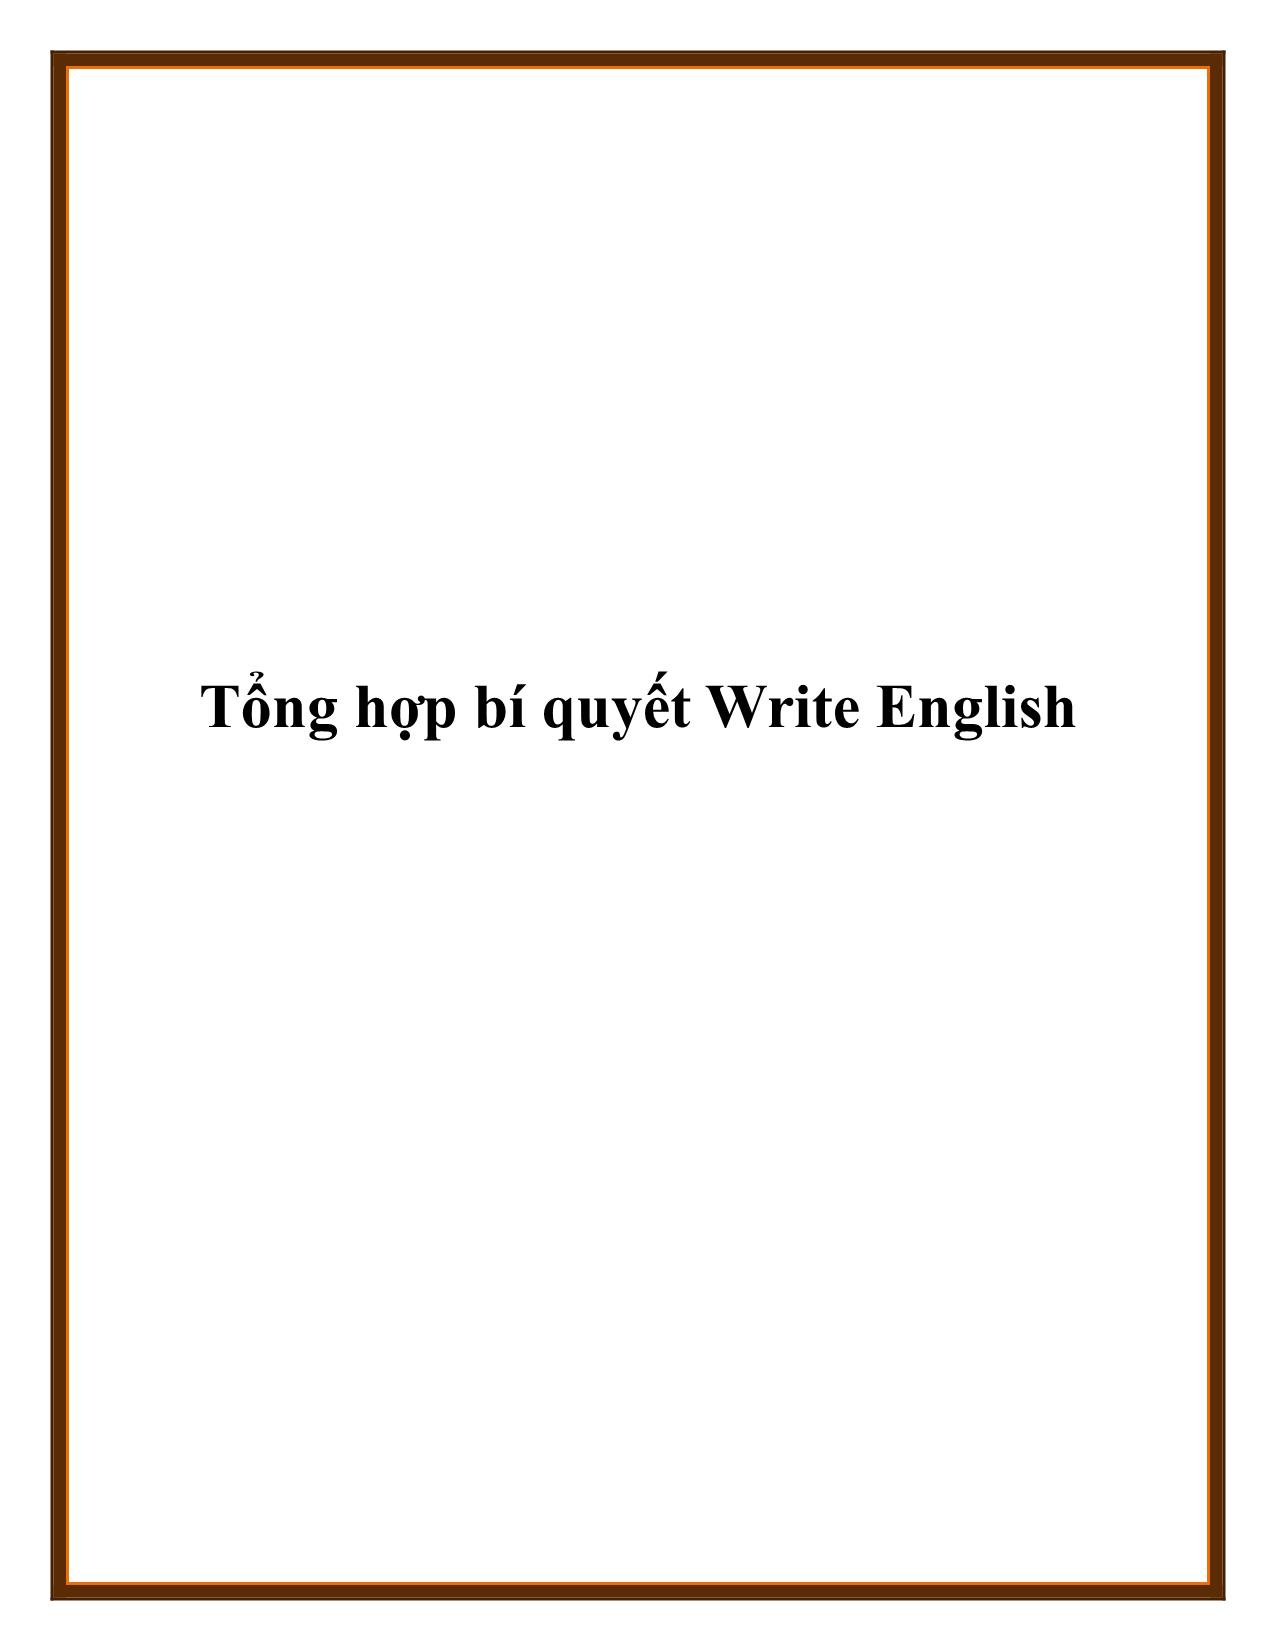 Tổng hợp bí quyết Write English trang 1